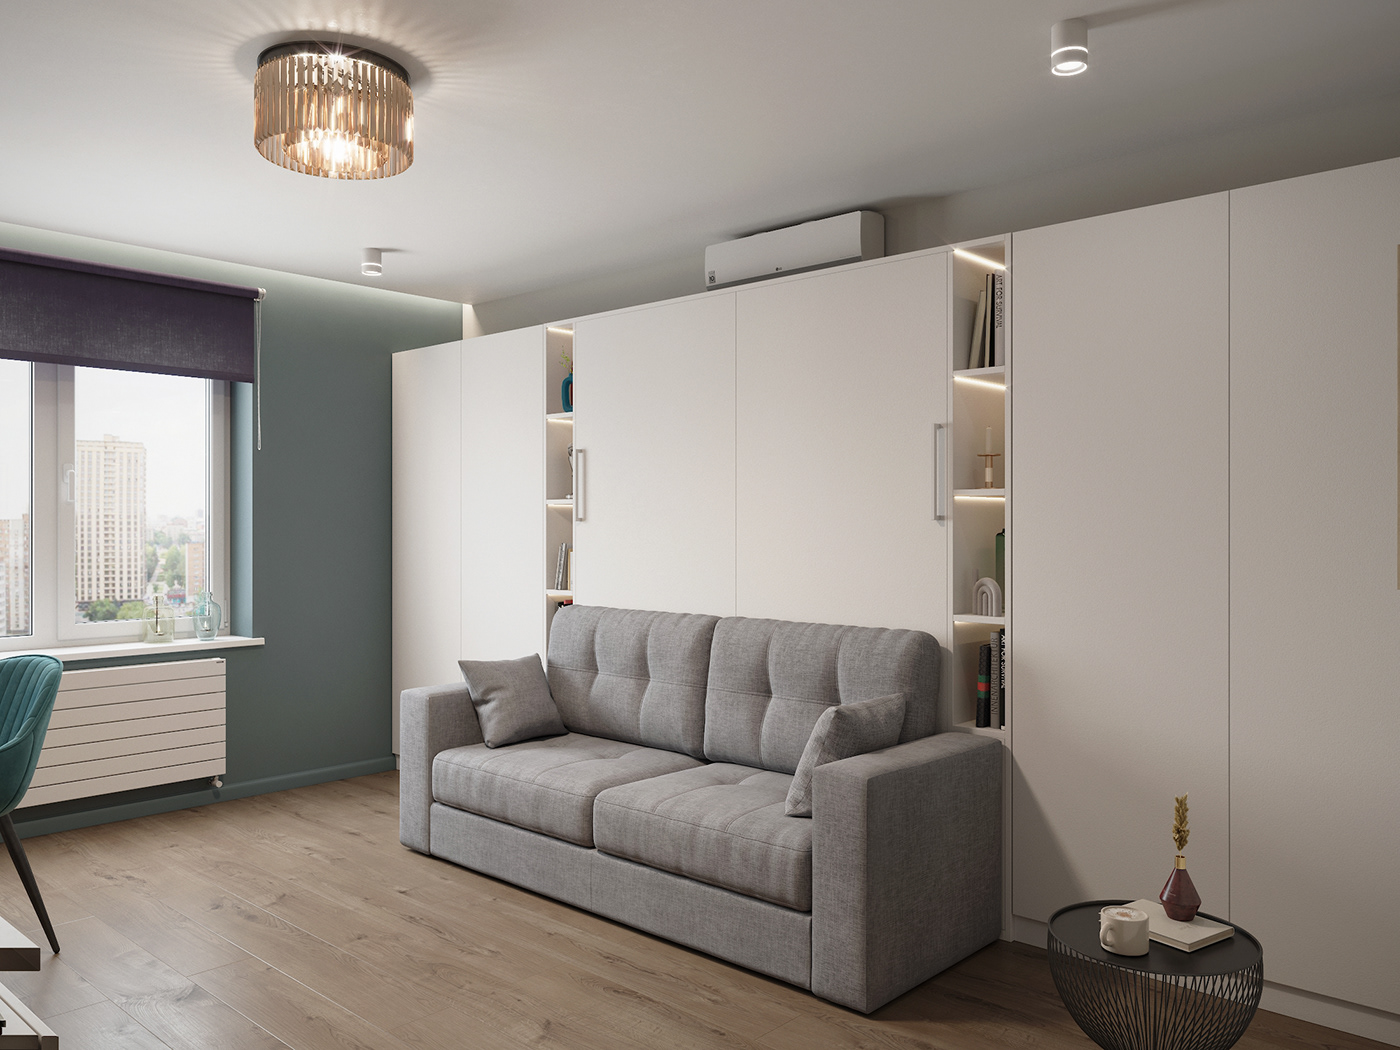 3ds max apartment architecture corona design Interior interior design  visualization